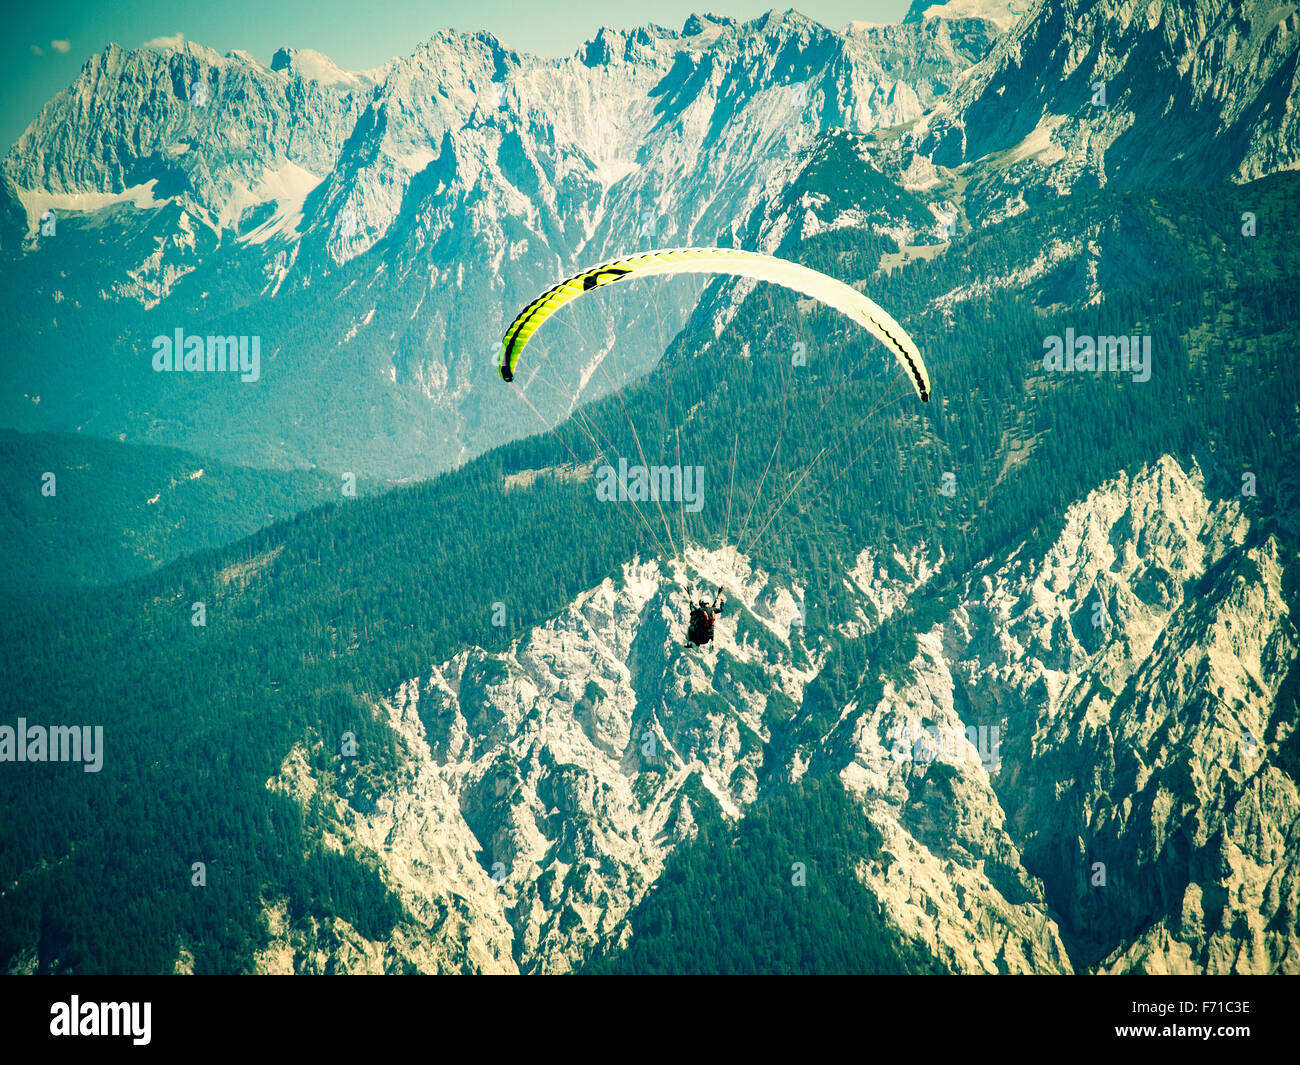 Vol en parapente sur la haute et solide gamme de montagnes des Alpes. Traitement croisé tonifié et filtrée stylisé Instagram stock photo Banque D'Images